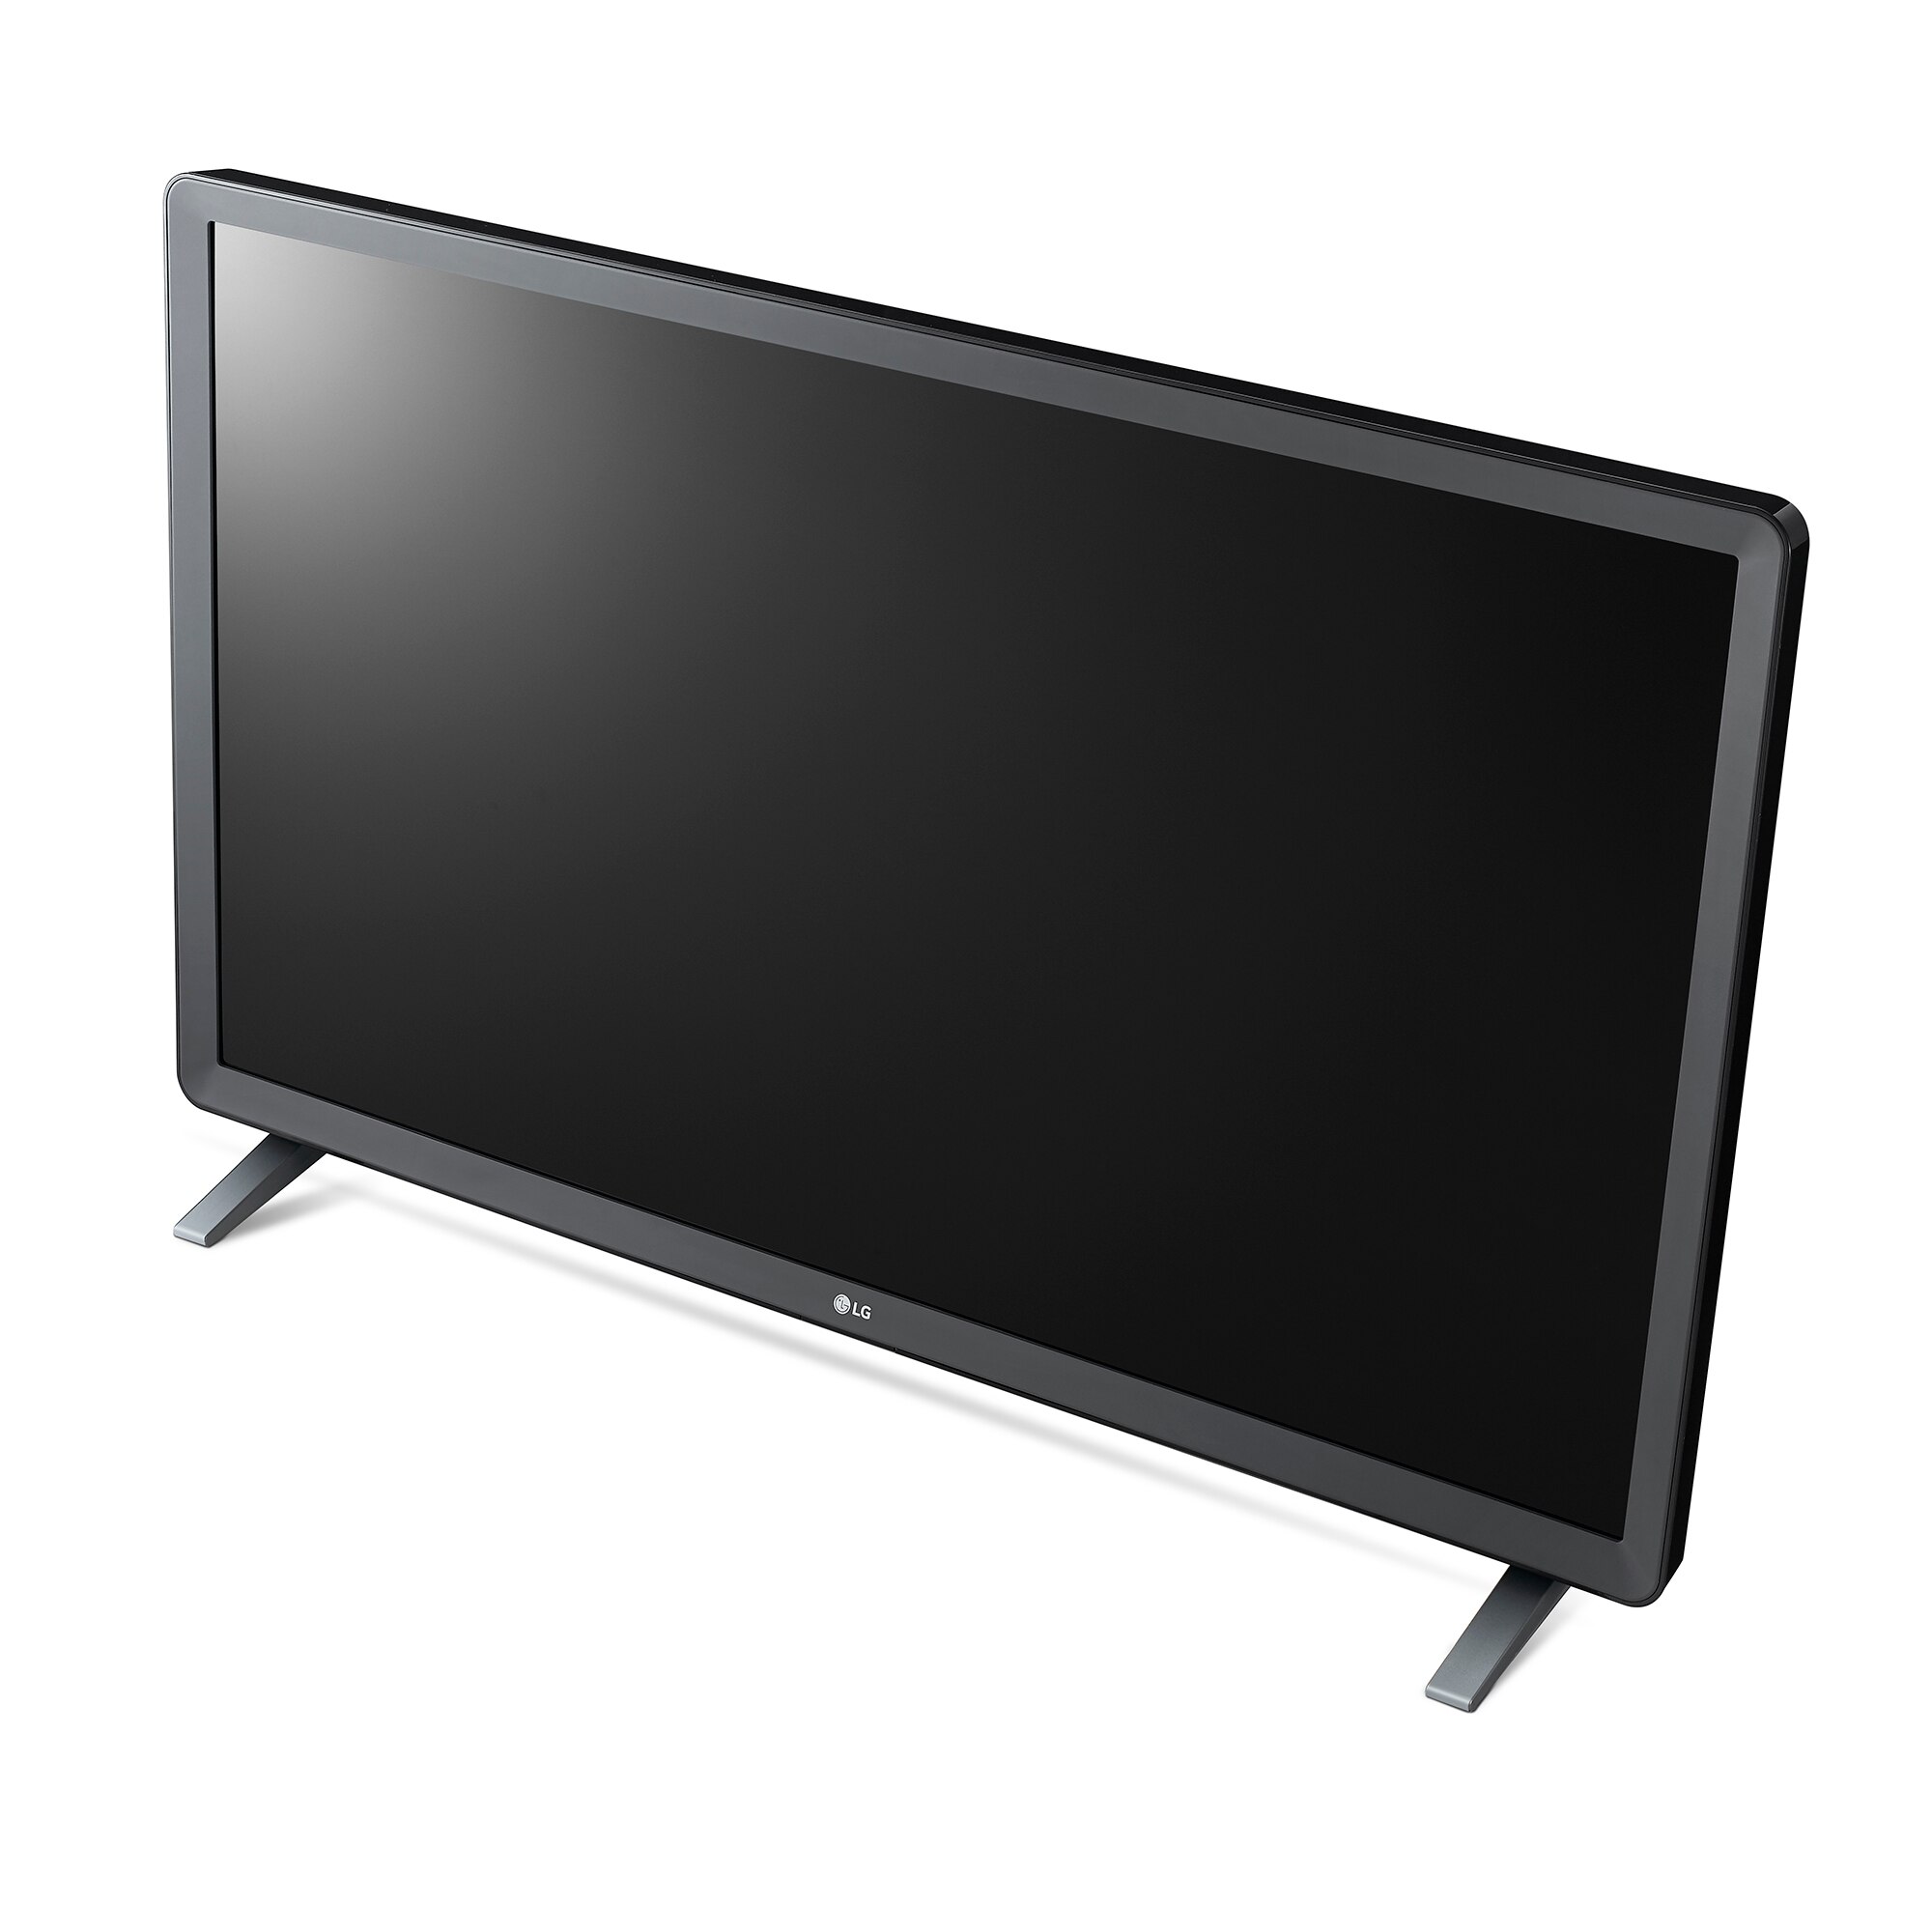 Встраиваемые телевизоры lg. Телевизор LG 32lj600u. LG Smart TV 32 lj600u. LG 32lj600u 2017 led. Телевизор LG 47lb652v 47".